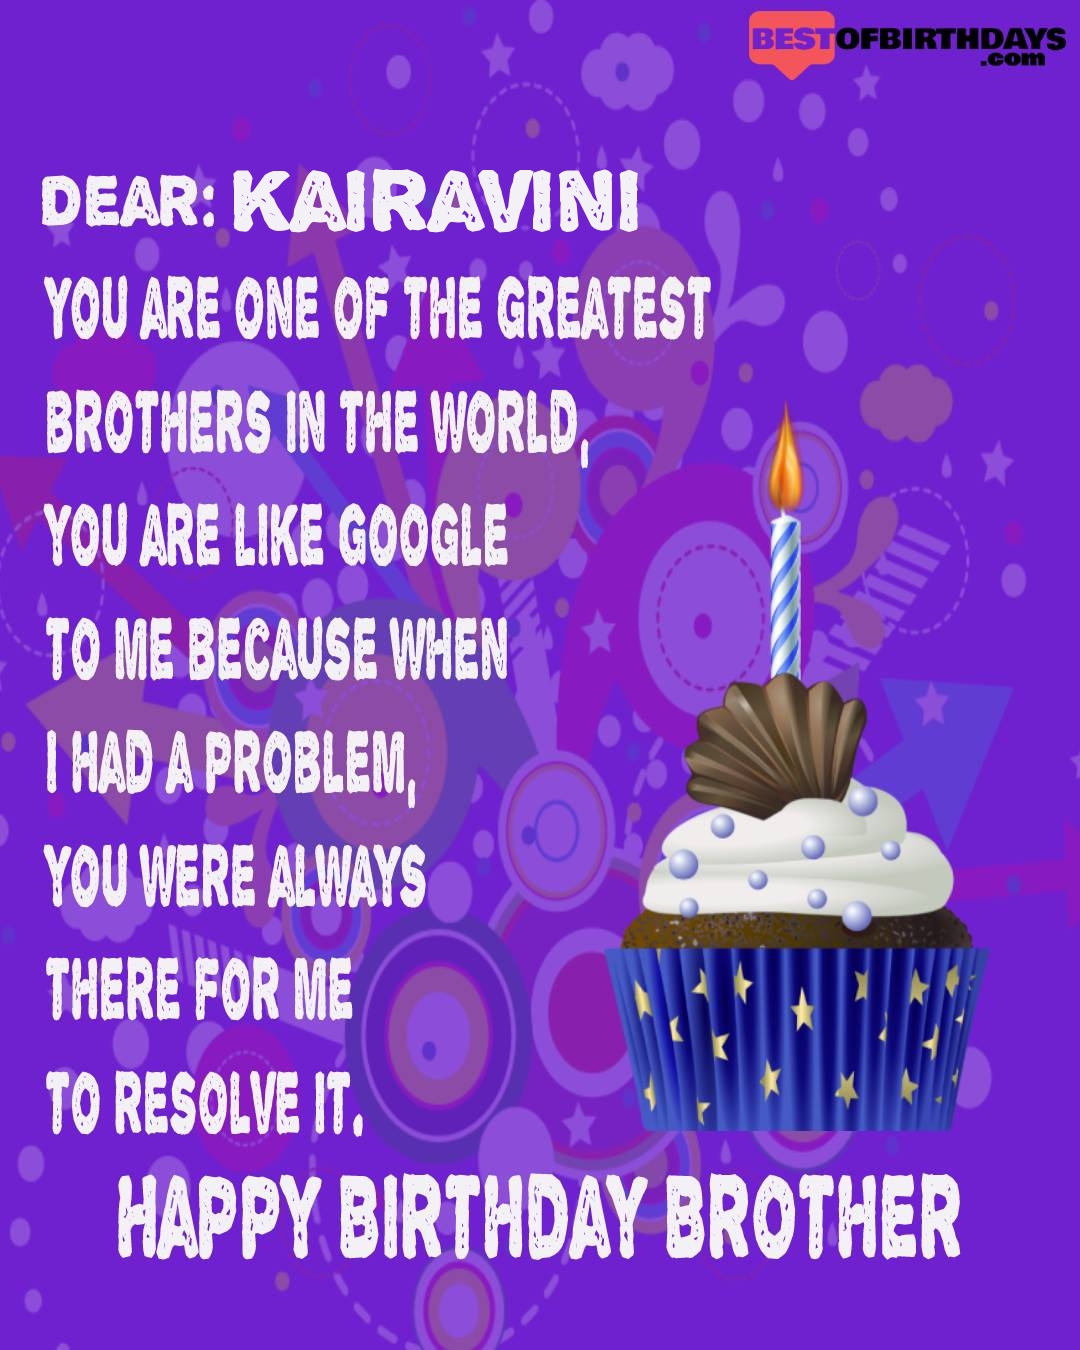 Happy birthday kairavini bhai brother bro